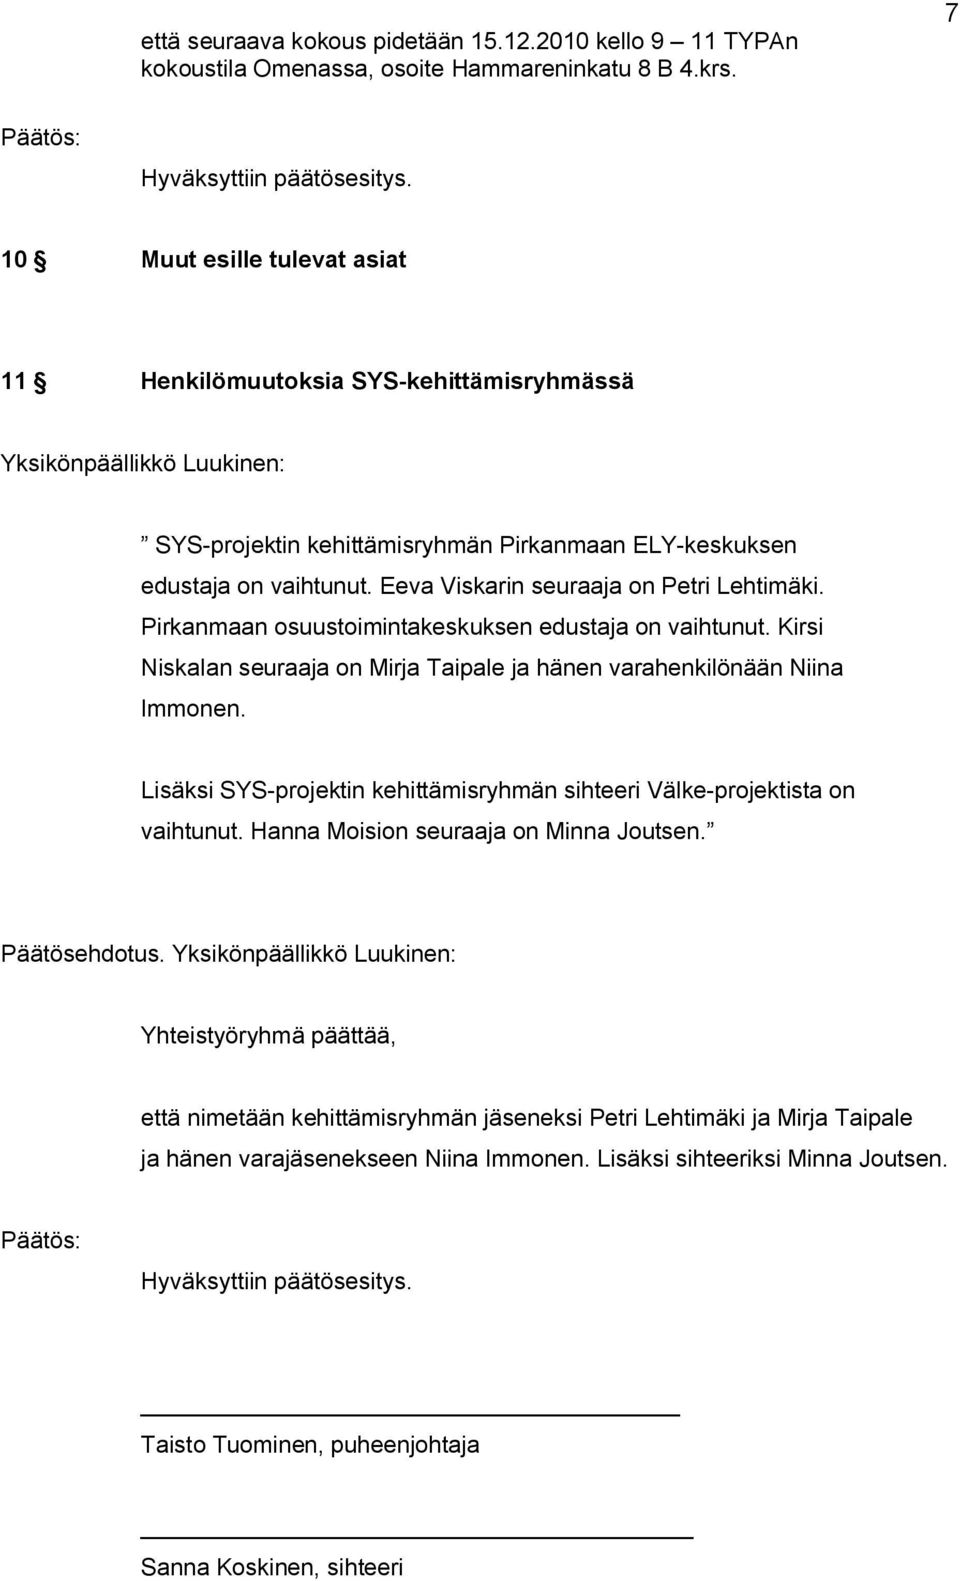 Eeva Viskarin seuraaja on Petri Lehtimäki. Pirkanmaan osuustoimintakeskuksen edustaja on vaihtunut. Kirsi Niskalan seuraaja on Mirja Taipale ja hänen varahenkilönään Niina Immonen.